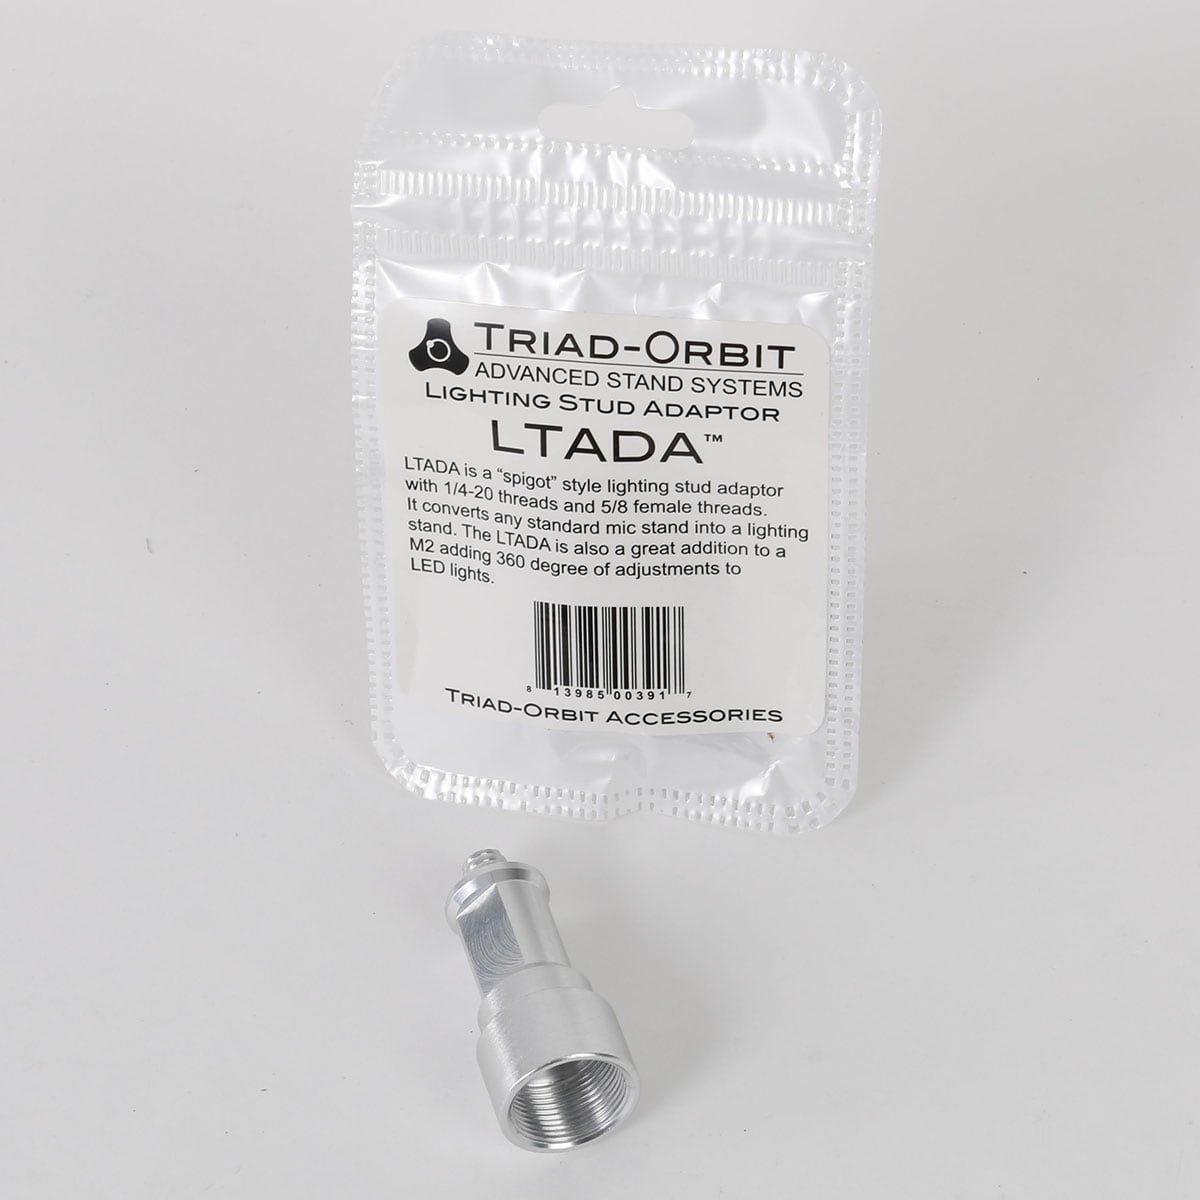 Triad-Orbit LTADA Lighting Stud Adaptor